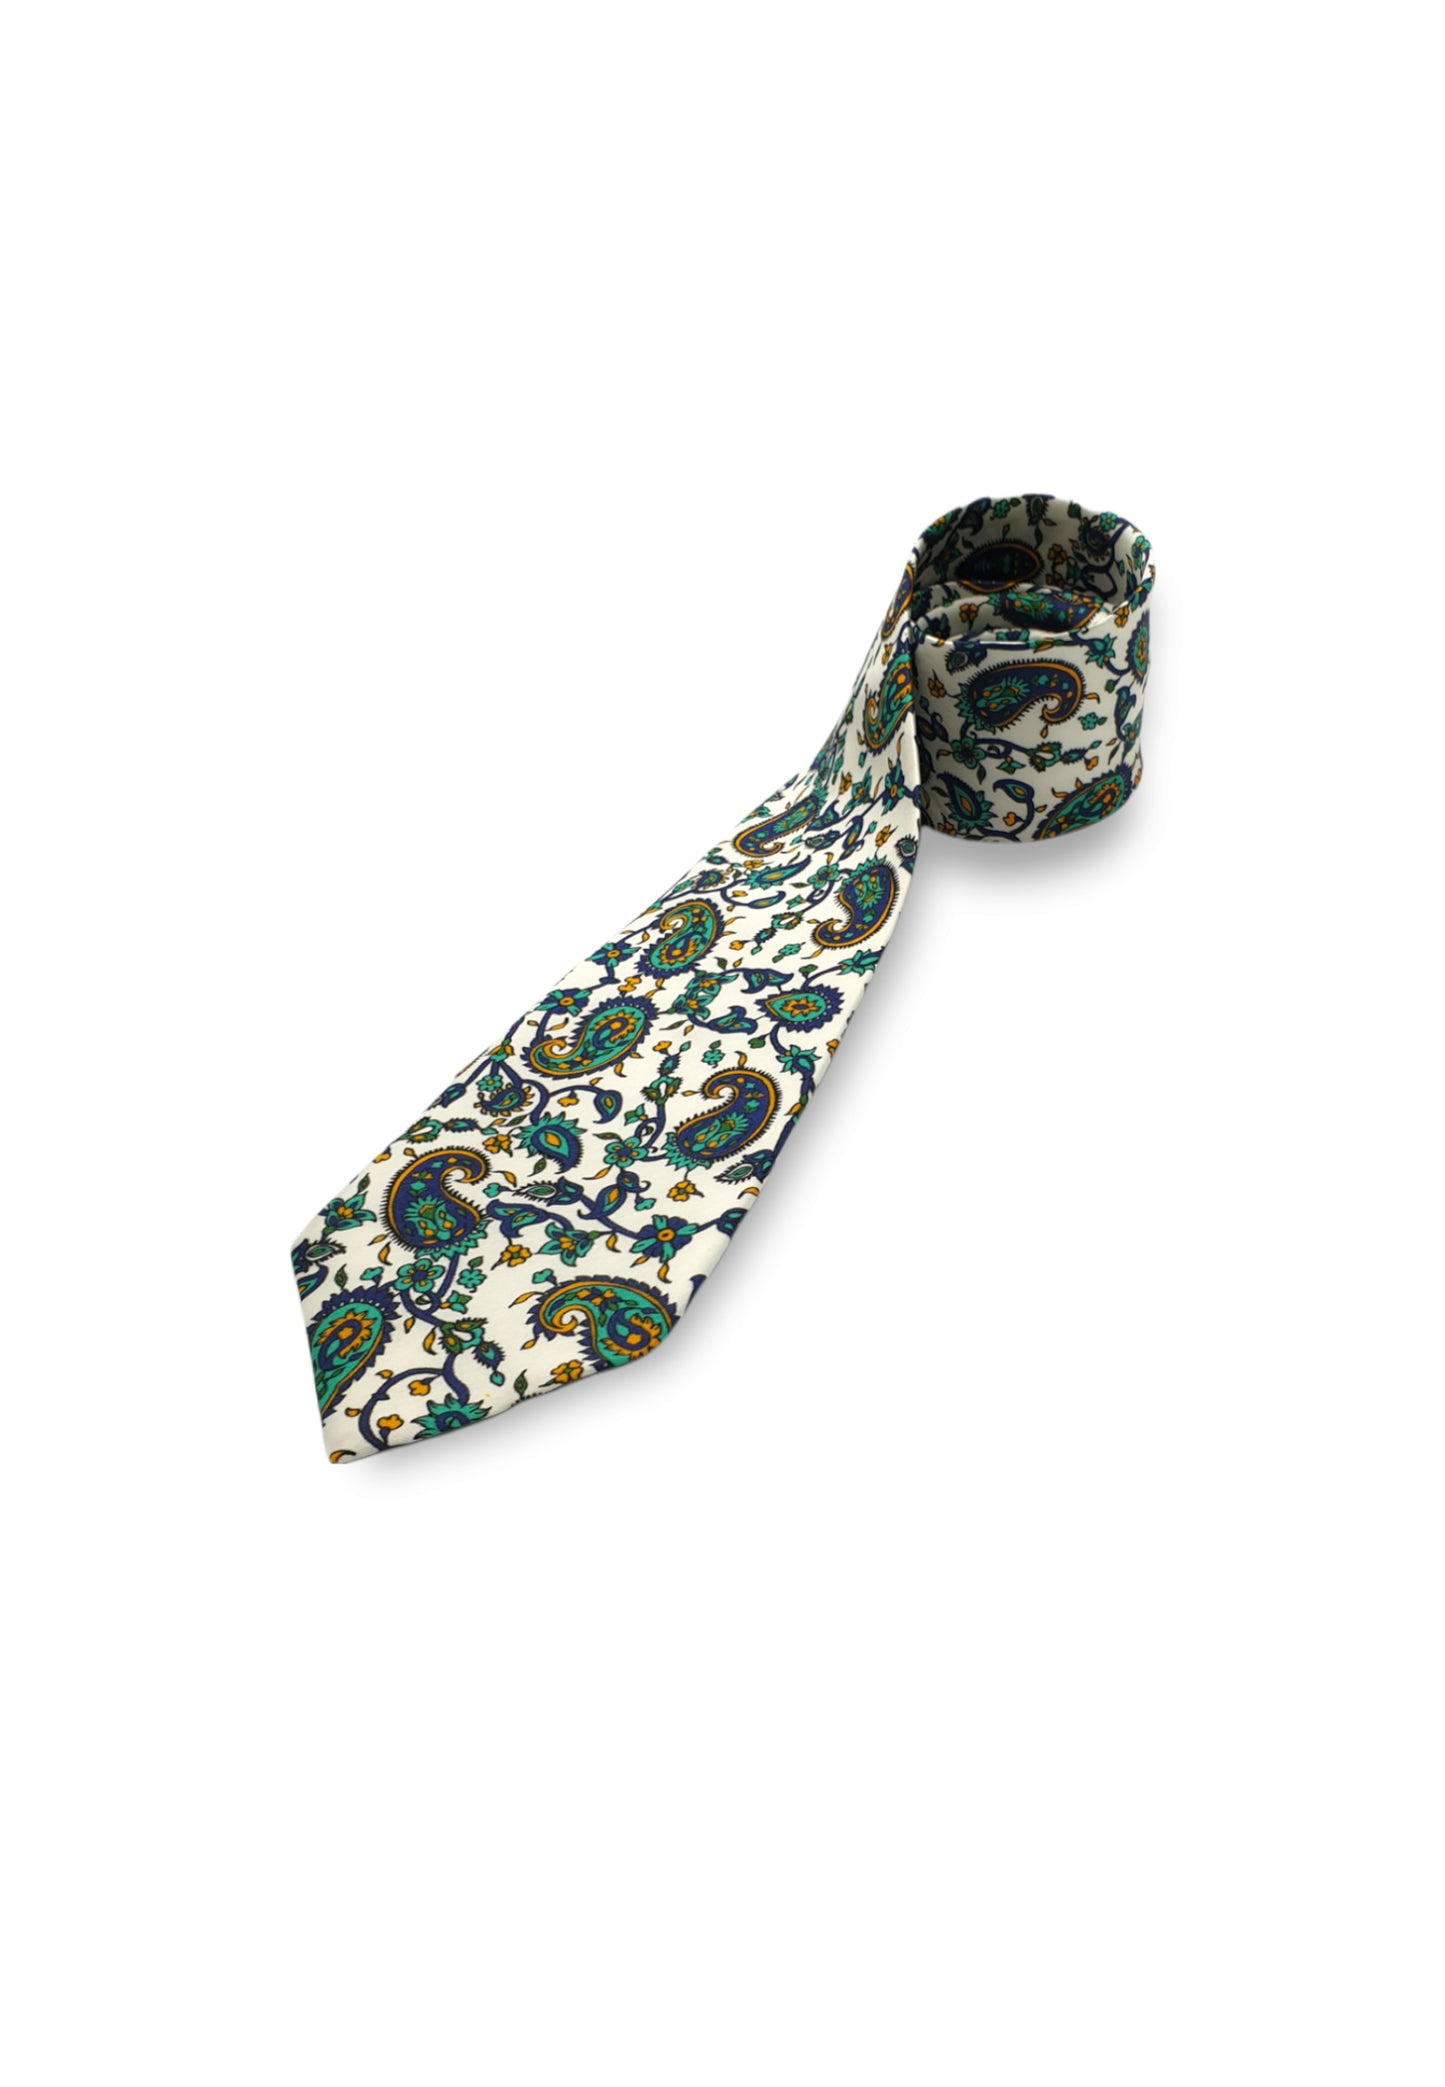 TORANJ- Silk Necktie